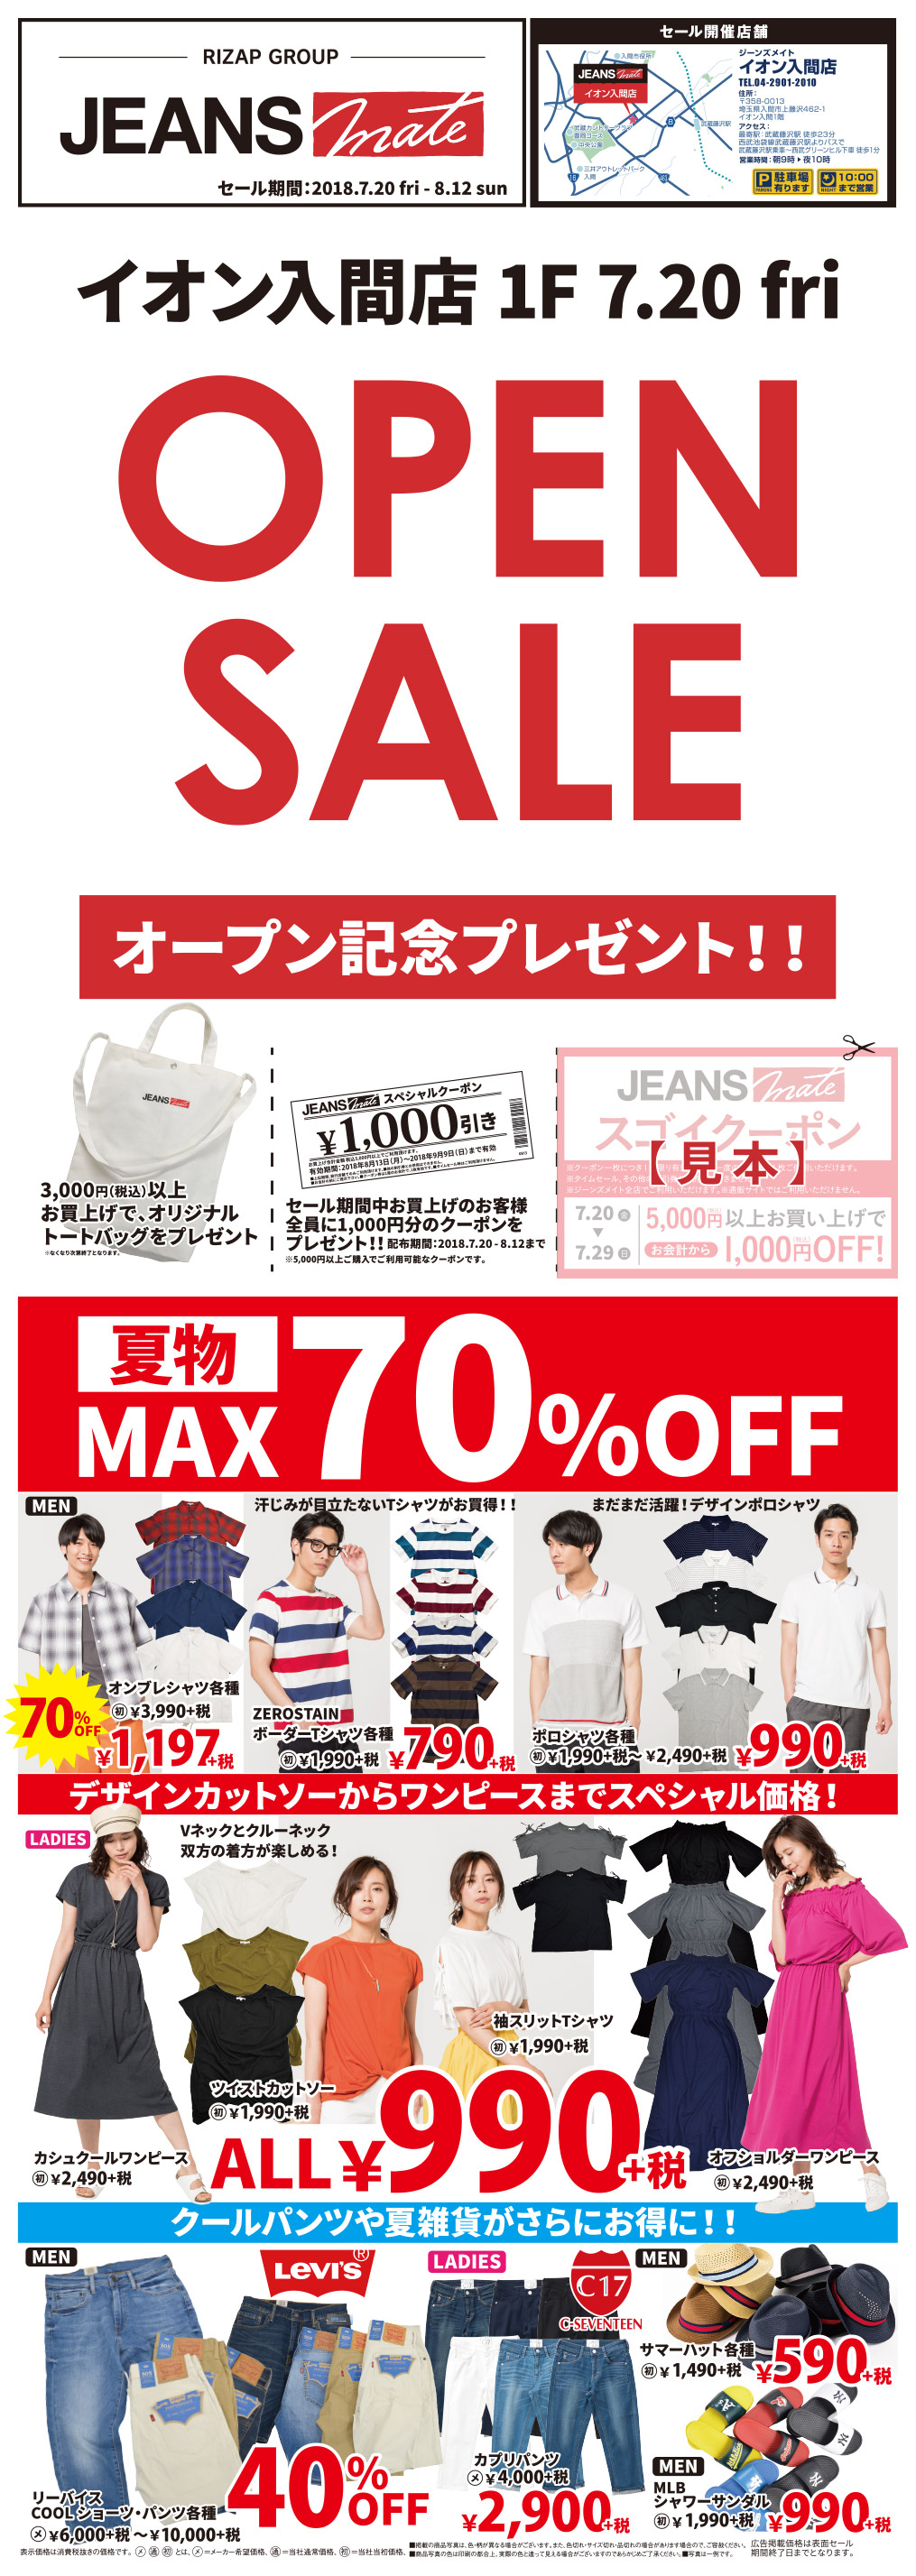 【新店大特価！】夏物が最大70%OFF！デザインカットソーからワンピースまでALL990円！